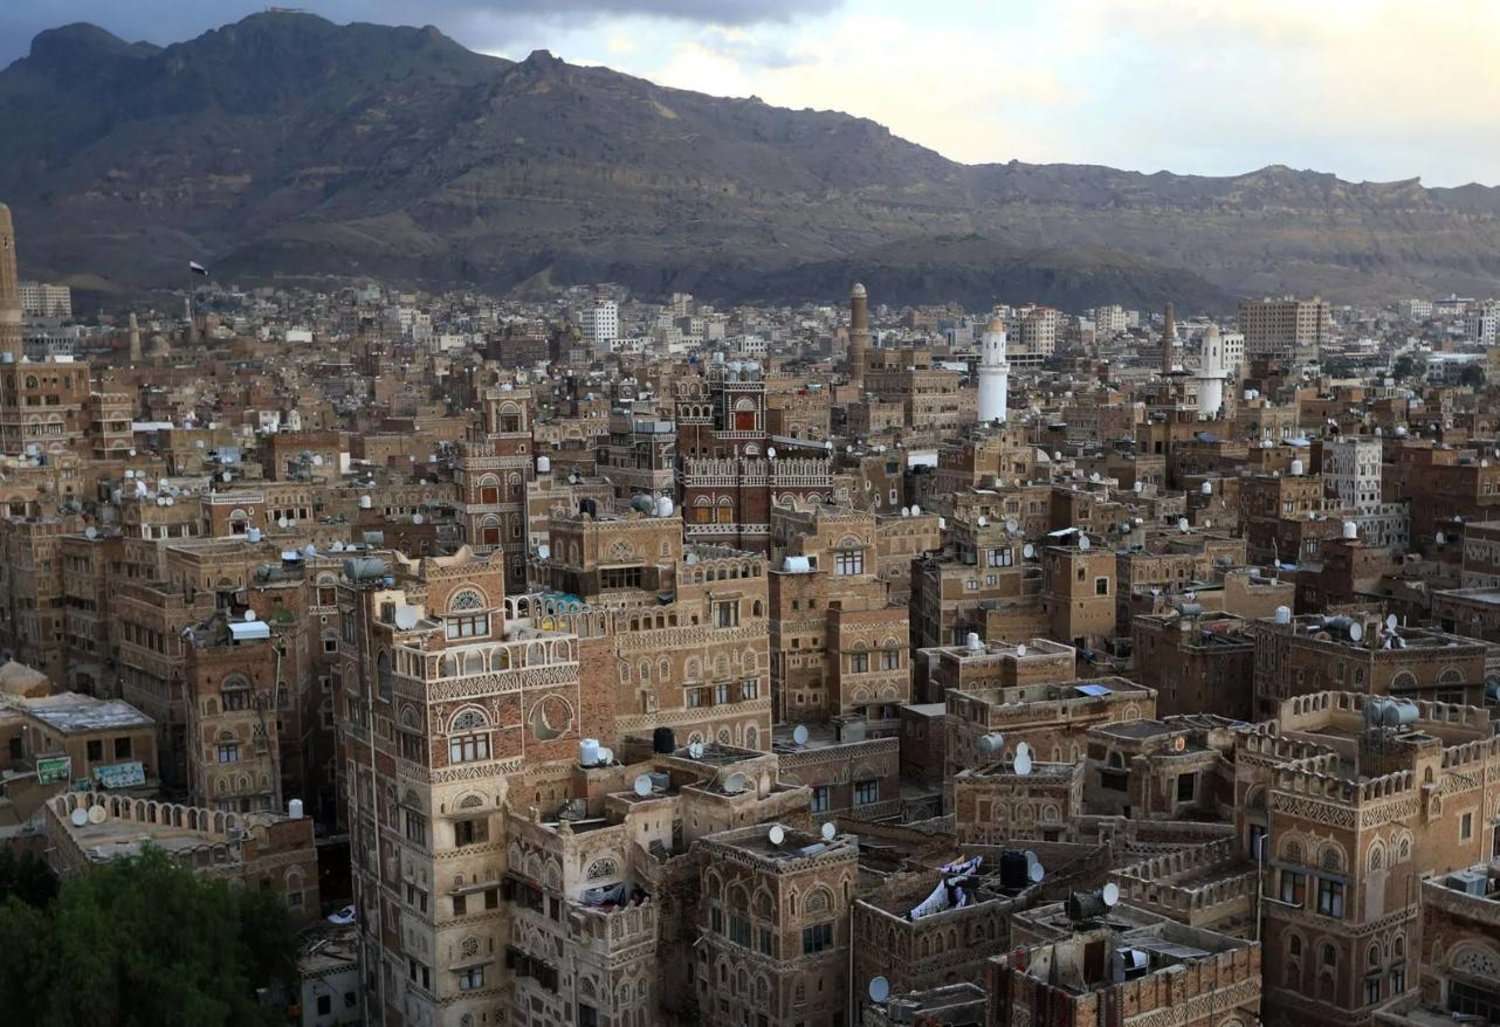 الكشف عن دولتان عربيتان جندت شخصيات يمنية معروفة تركز على هؤلاء القادة